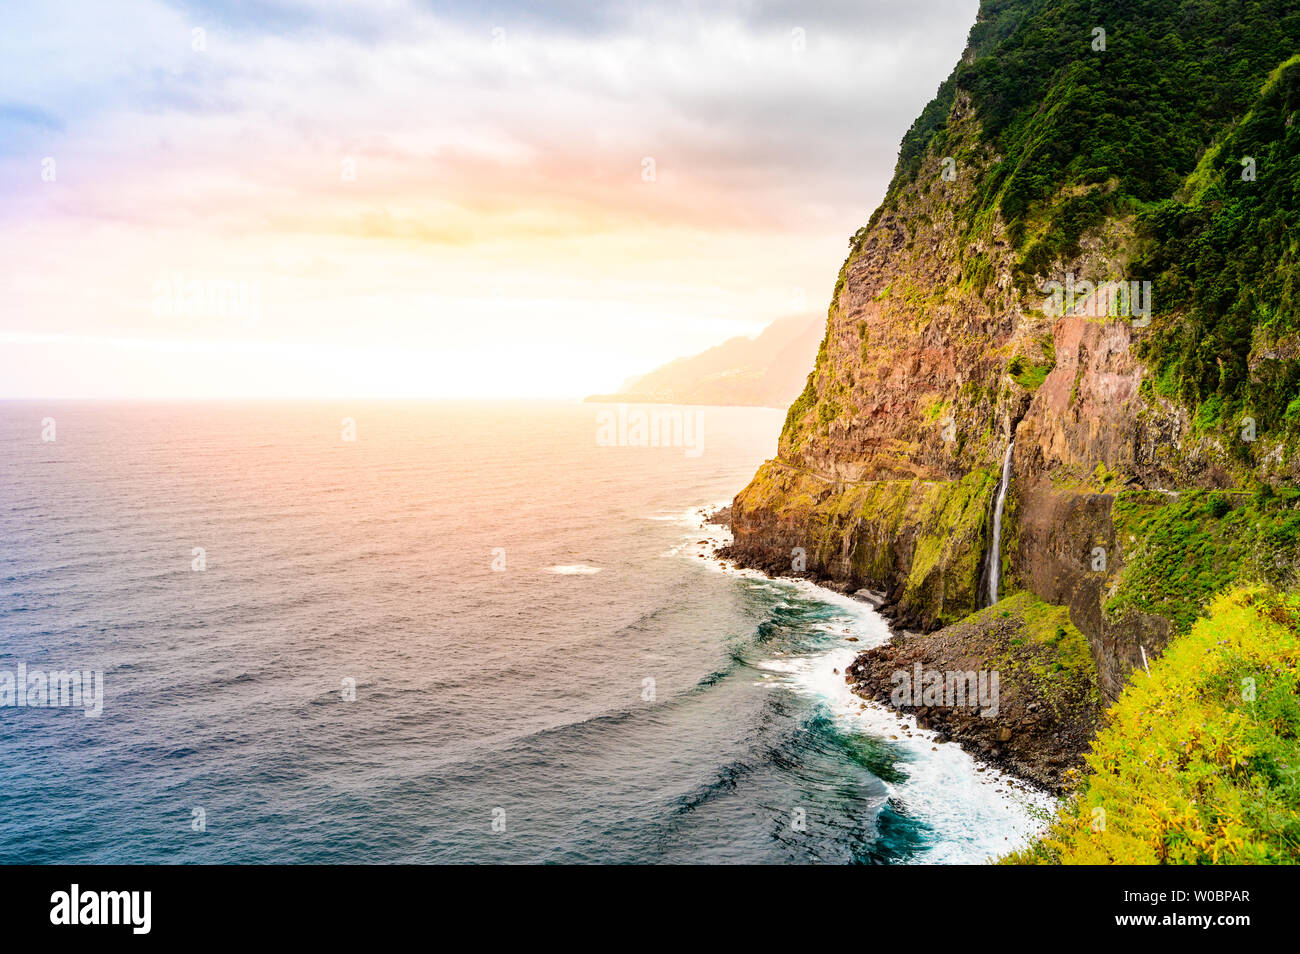 Schönen wilden Küste Landschaft Ansicht mit Bridal Veil Falls (Veu da Noiva) Ponta do Poiso auf Madeira. In der Nähe von Porto Moniz, Seixal, Portugal. Stockfoto